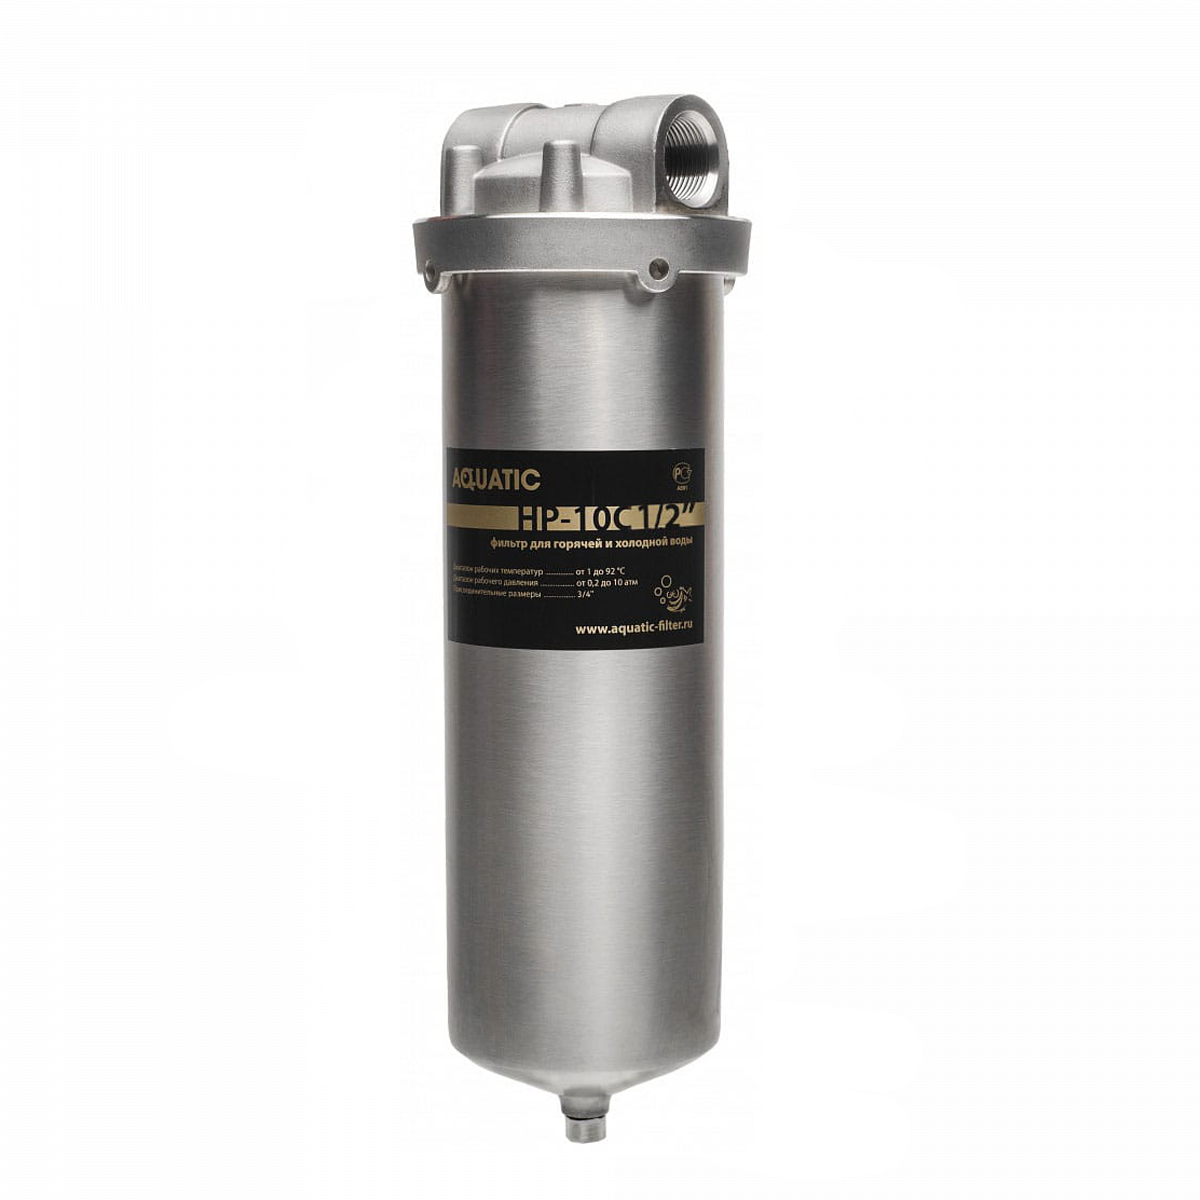 Корпус фильтра Aquatic HP-10C 3/4" Premium  для горячей и холодной воды 3/4ВР нержавеющая сталь, со сливом